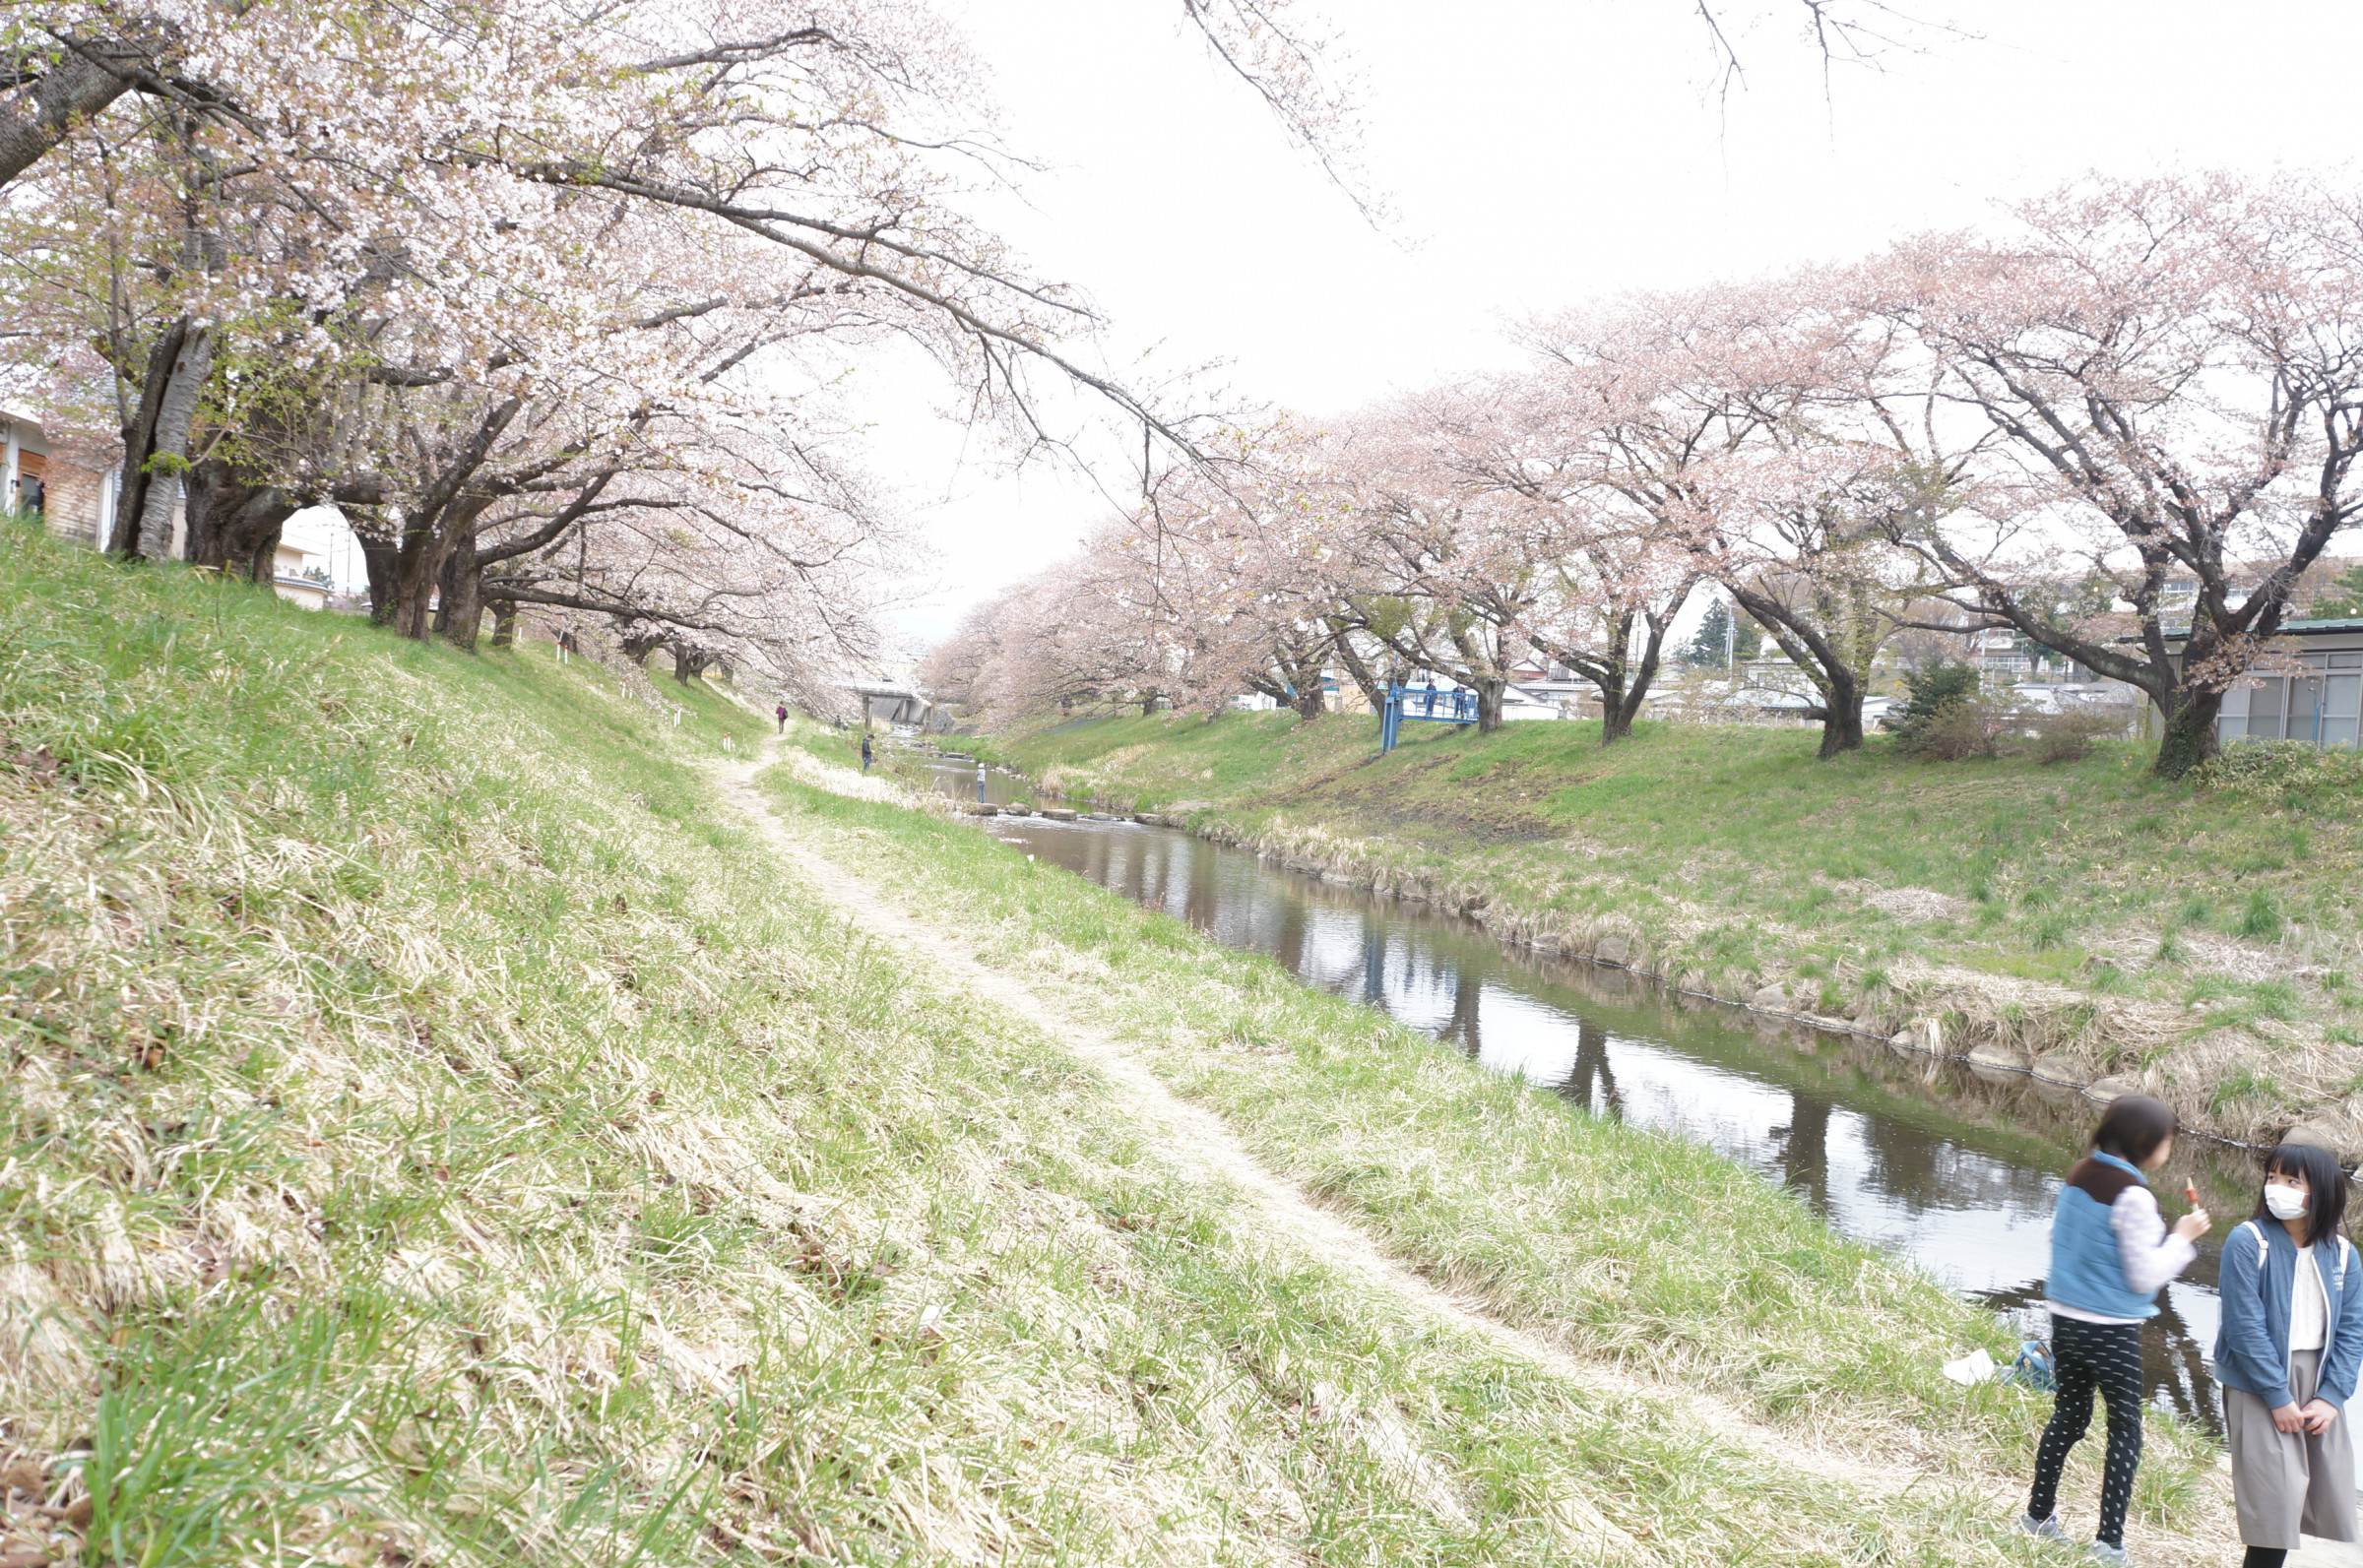 藤田川沿いの桜　ふれあい桜の愛称で親しまれている。近年は日本人だけではなく外国からの観光客もたくさん訪れています。見ごろは４月中旬